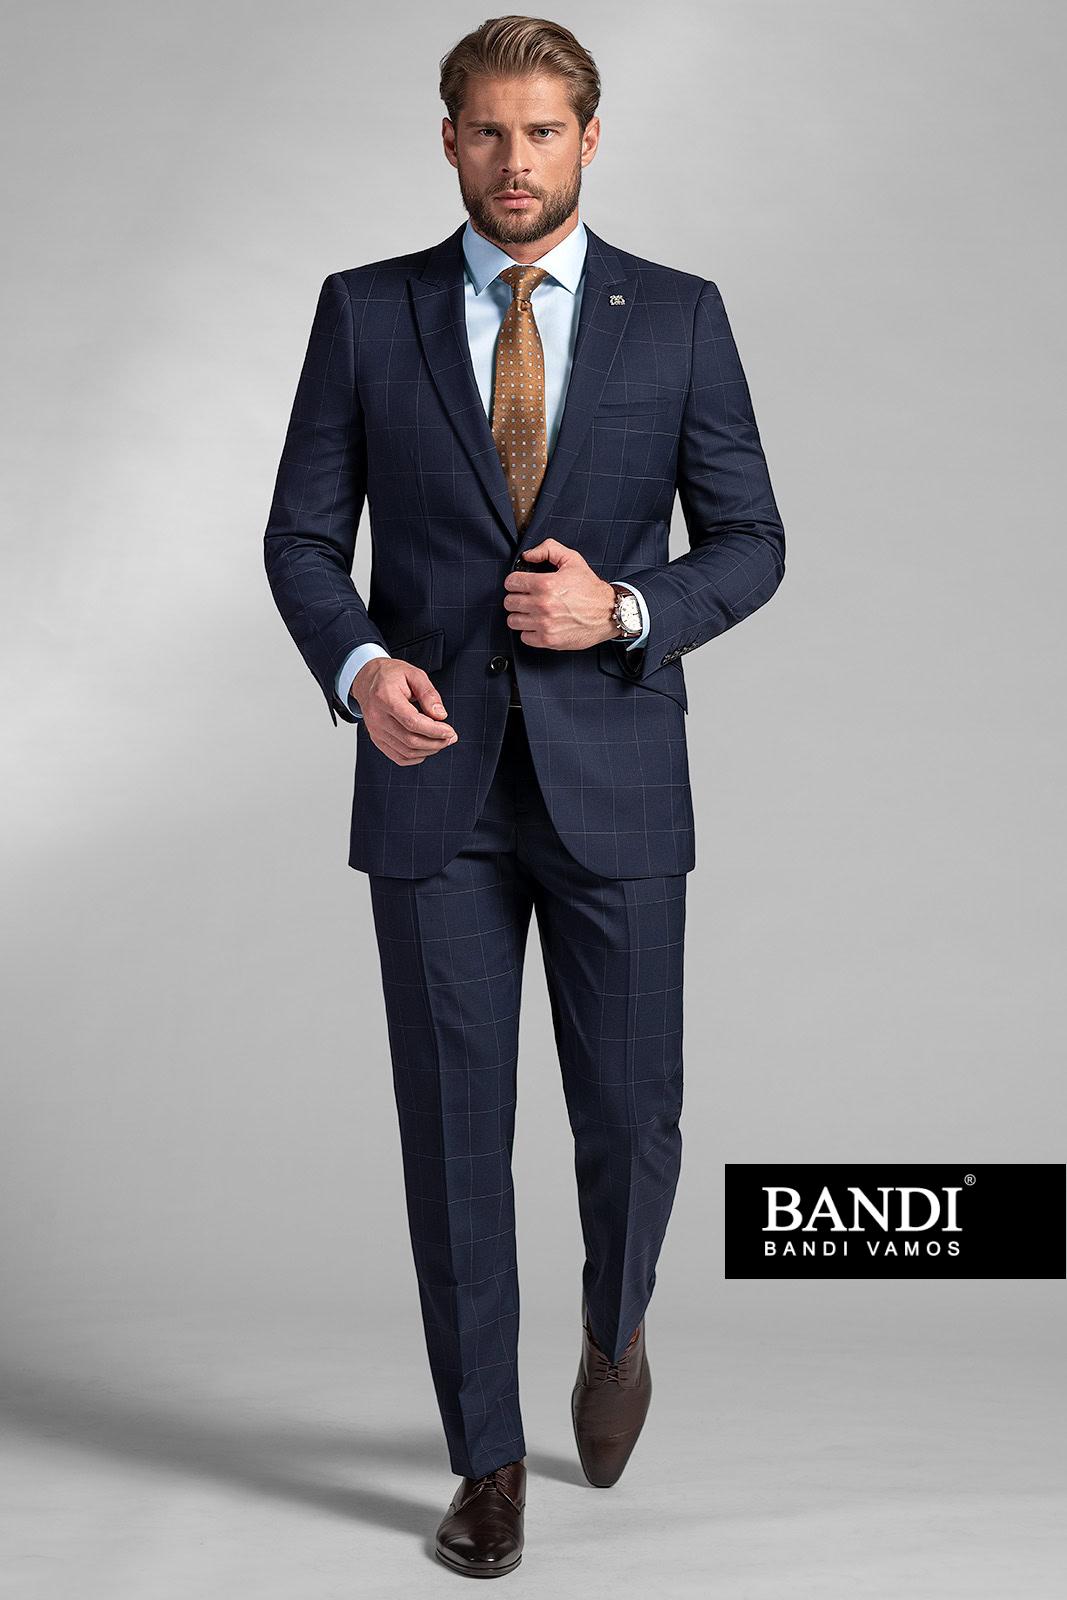 Pánsky oblek BANDI Lacrone Marin vám pridá na dôraze v kancelárii aj počas medzinárodnej konferencie